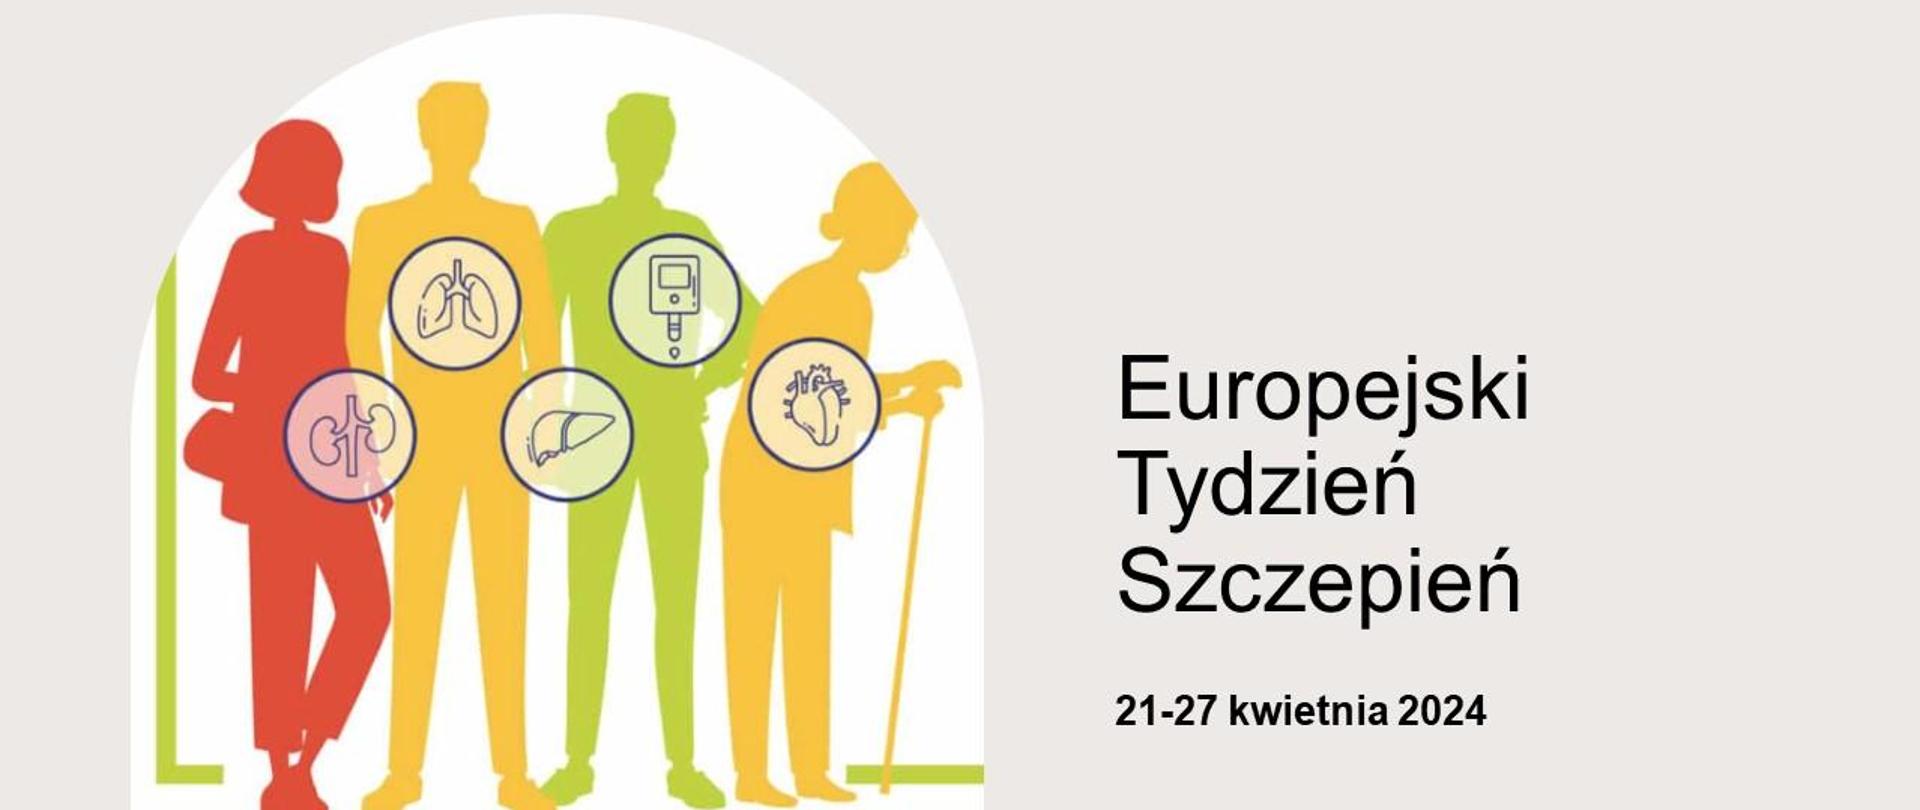 Wypełnione kolorami kontury 2 sylwetek kobiet i 2 mężczyzn w różnym wieku a na ich tle grafiki organów (płuca, wątroba, serce, nerki), obok napis: Europejski Tydzień Szczepień 21-27 kwietnia 2024